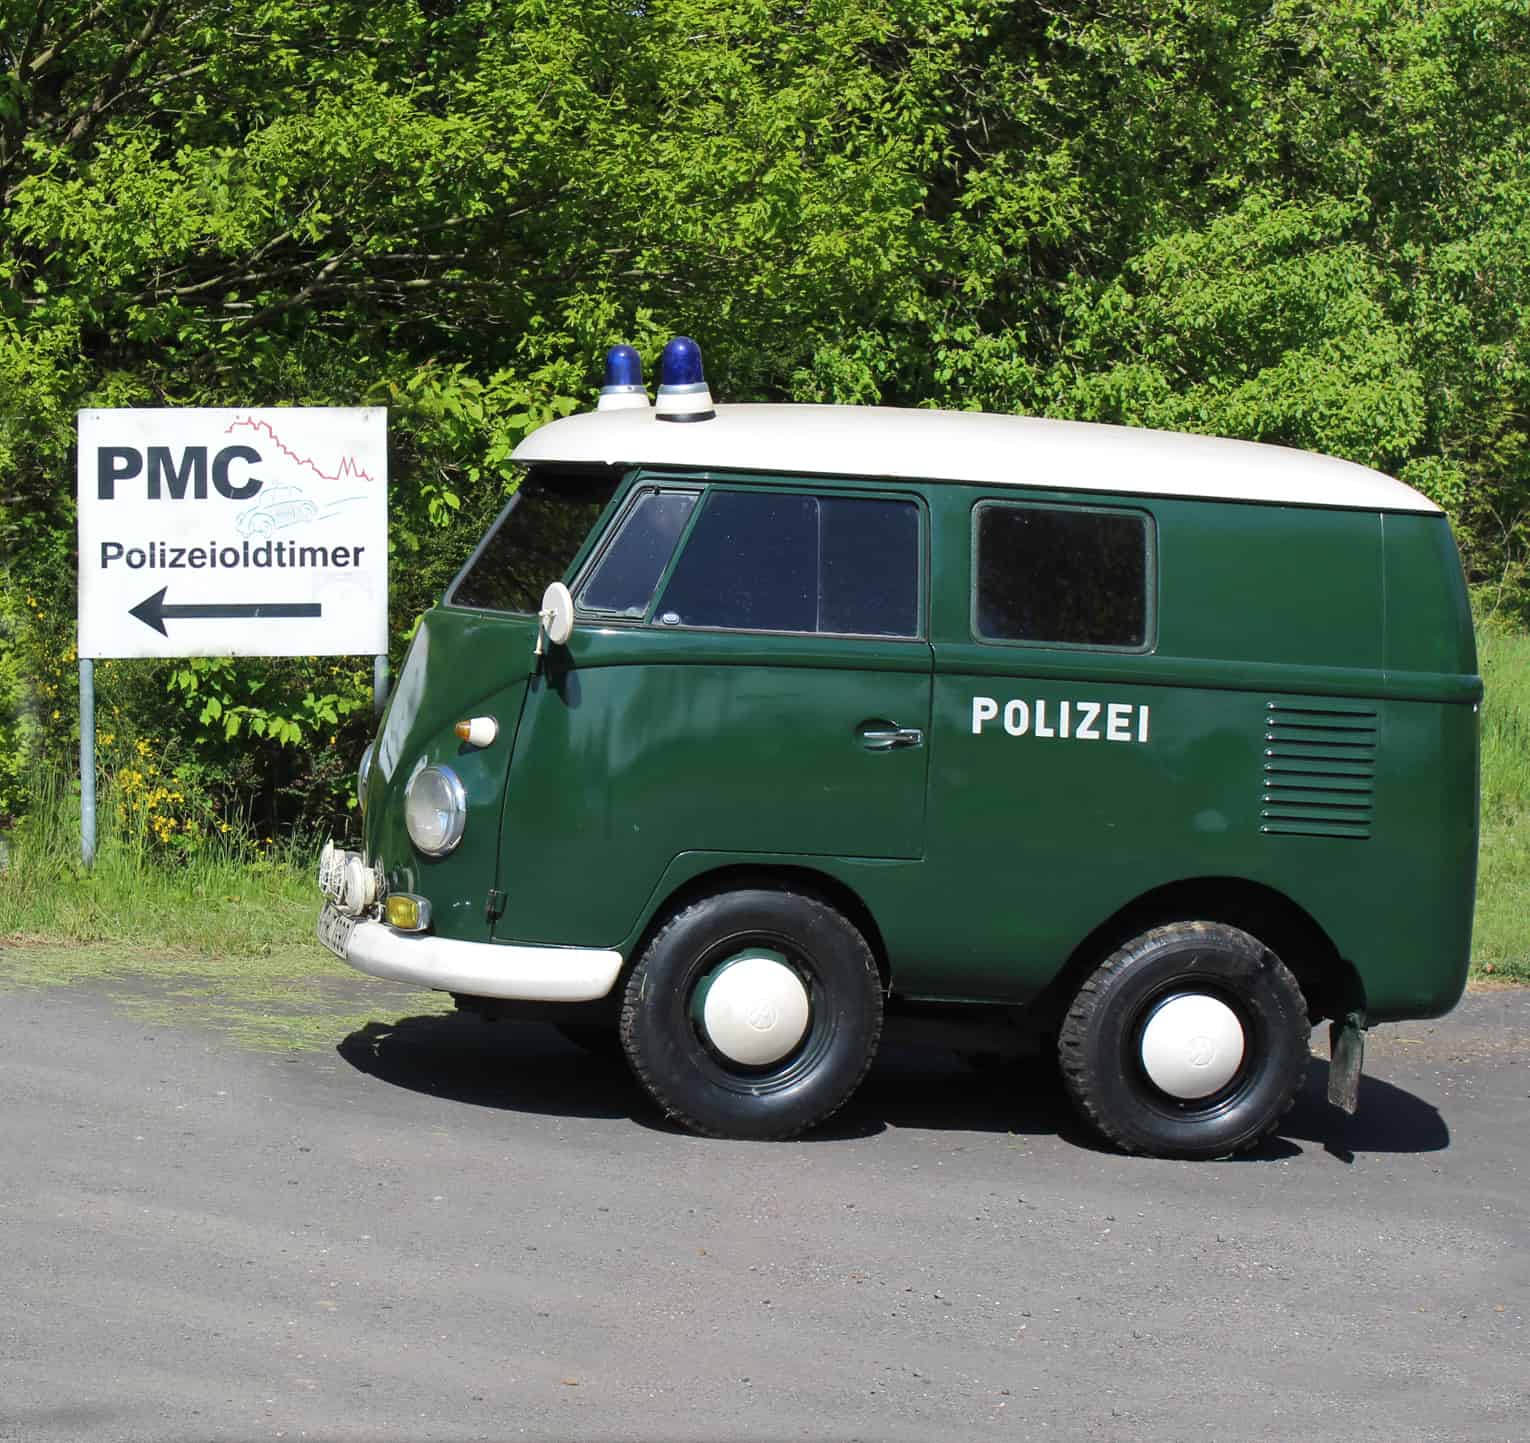 1. Deutsches Polizeioldtimer Museums Marburg